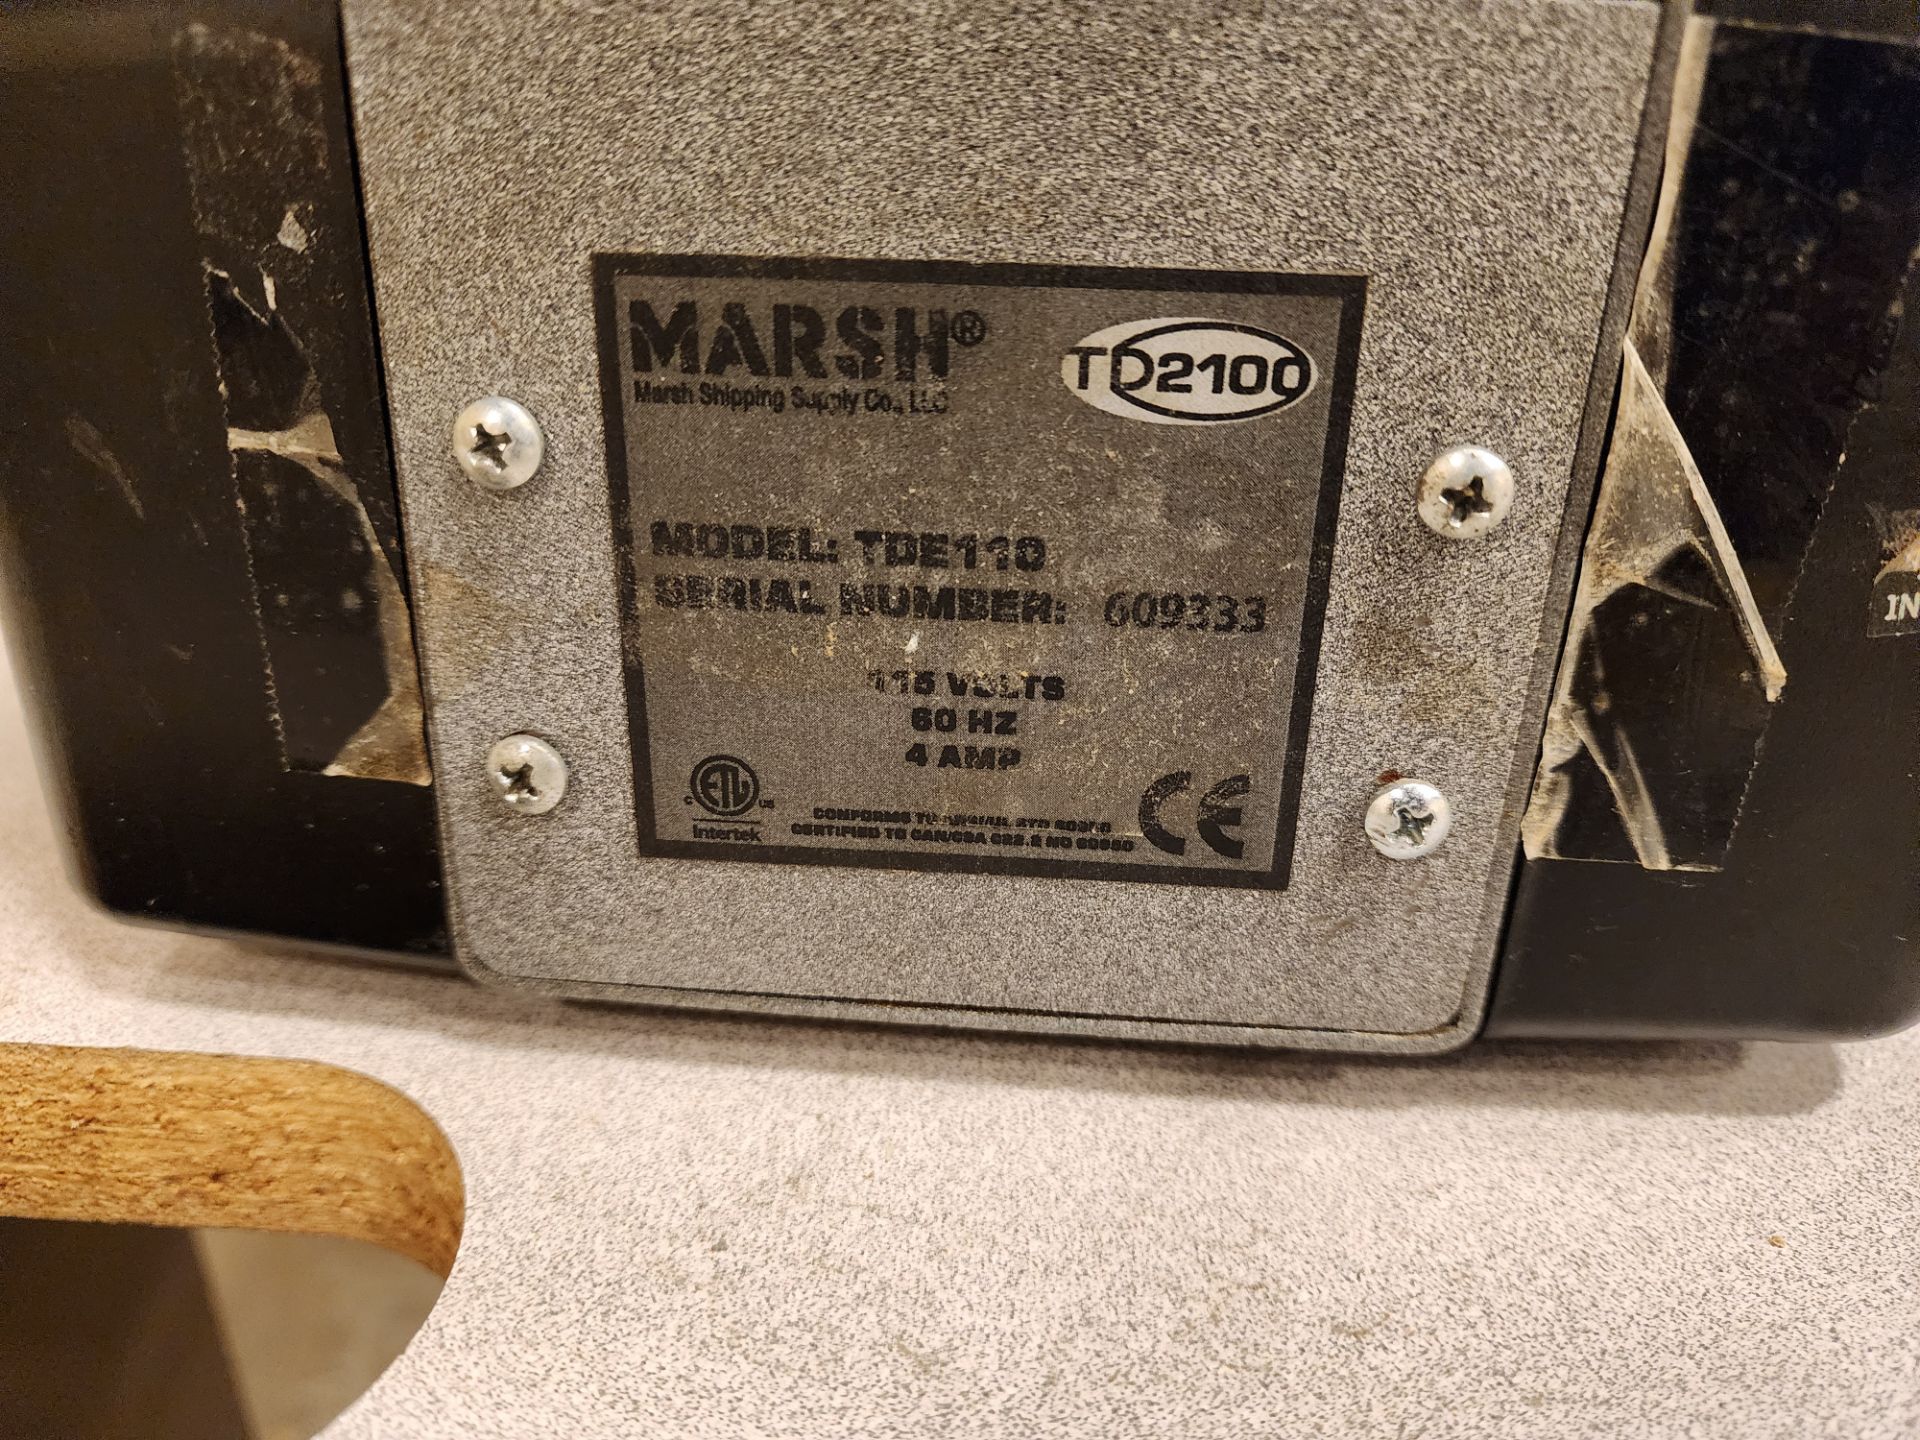 Lot of (2) Marsh TD2100 Tape Dispensers - Image 2 of 5